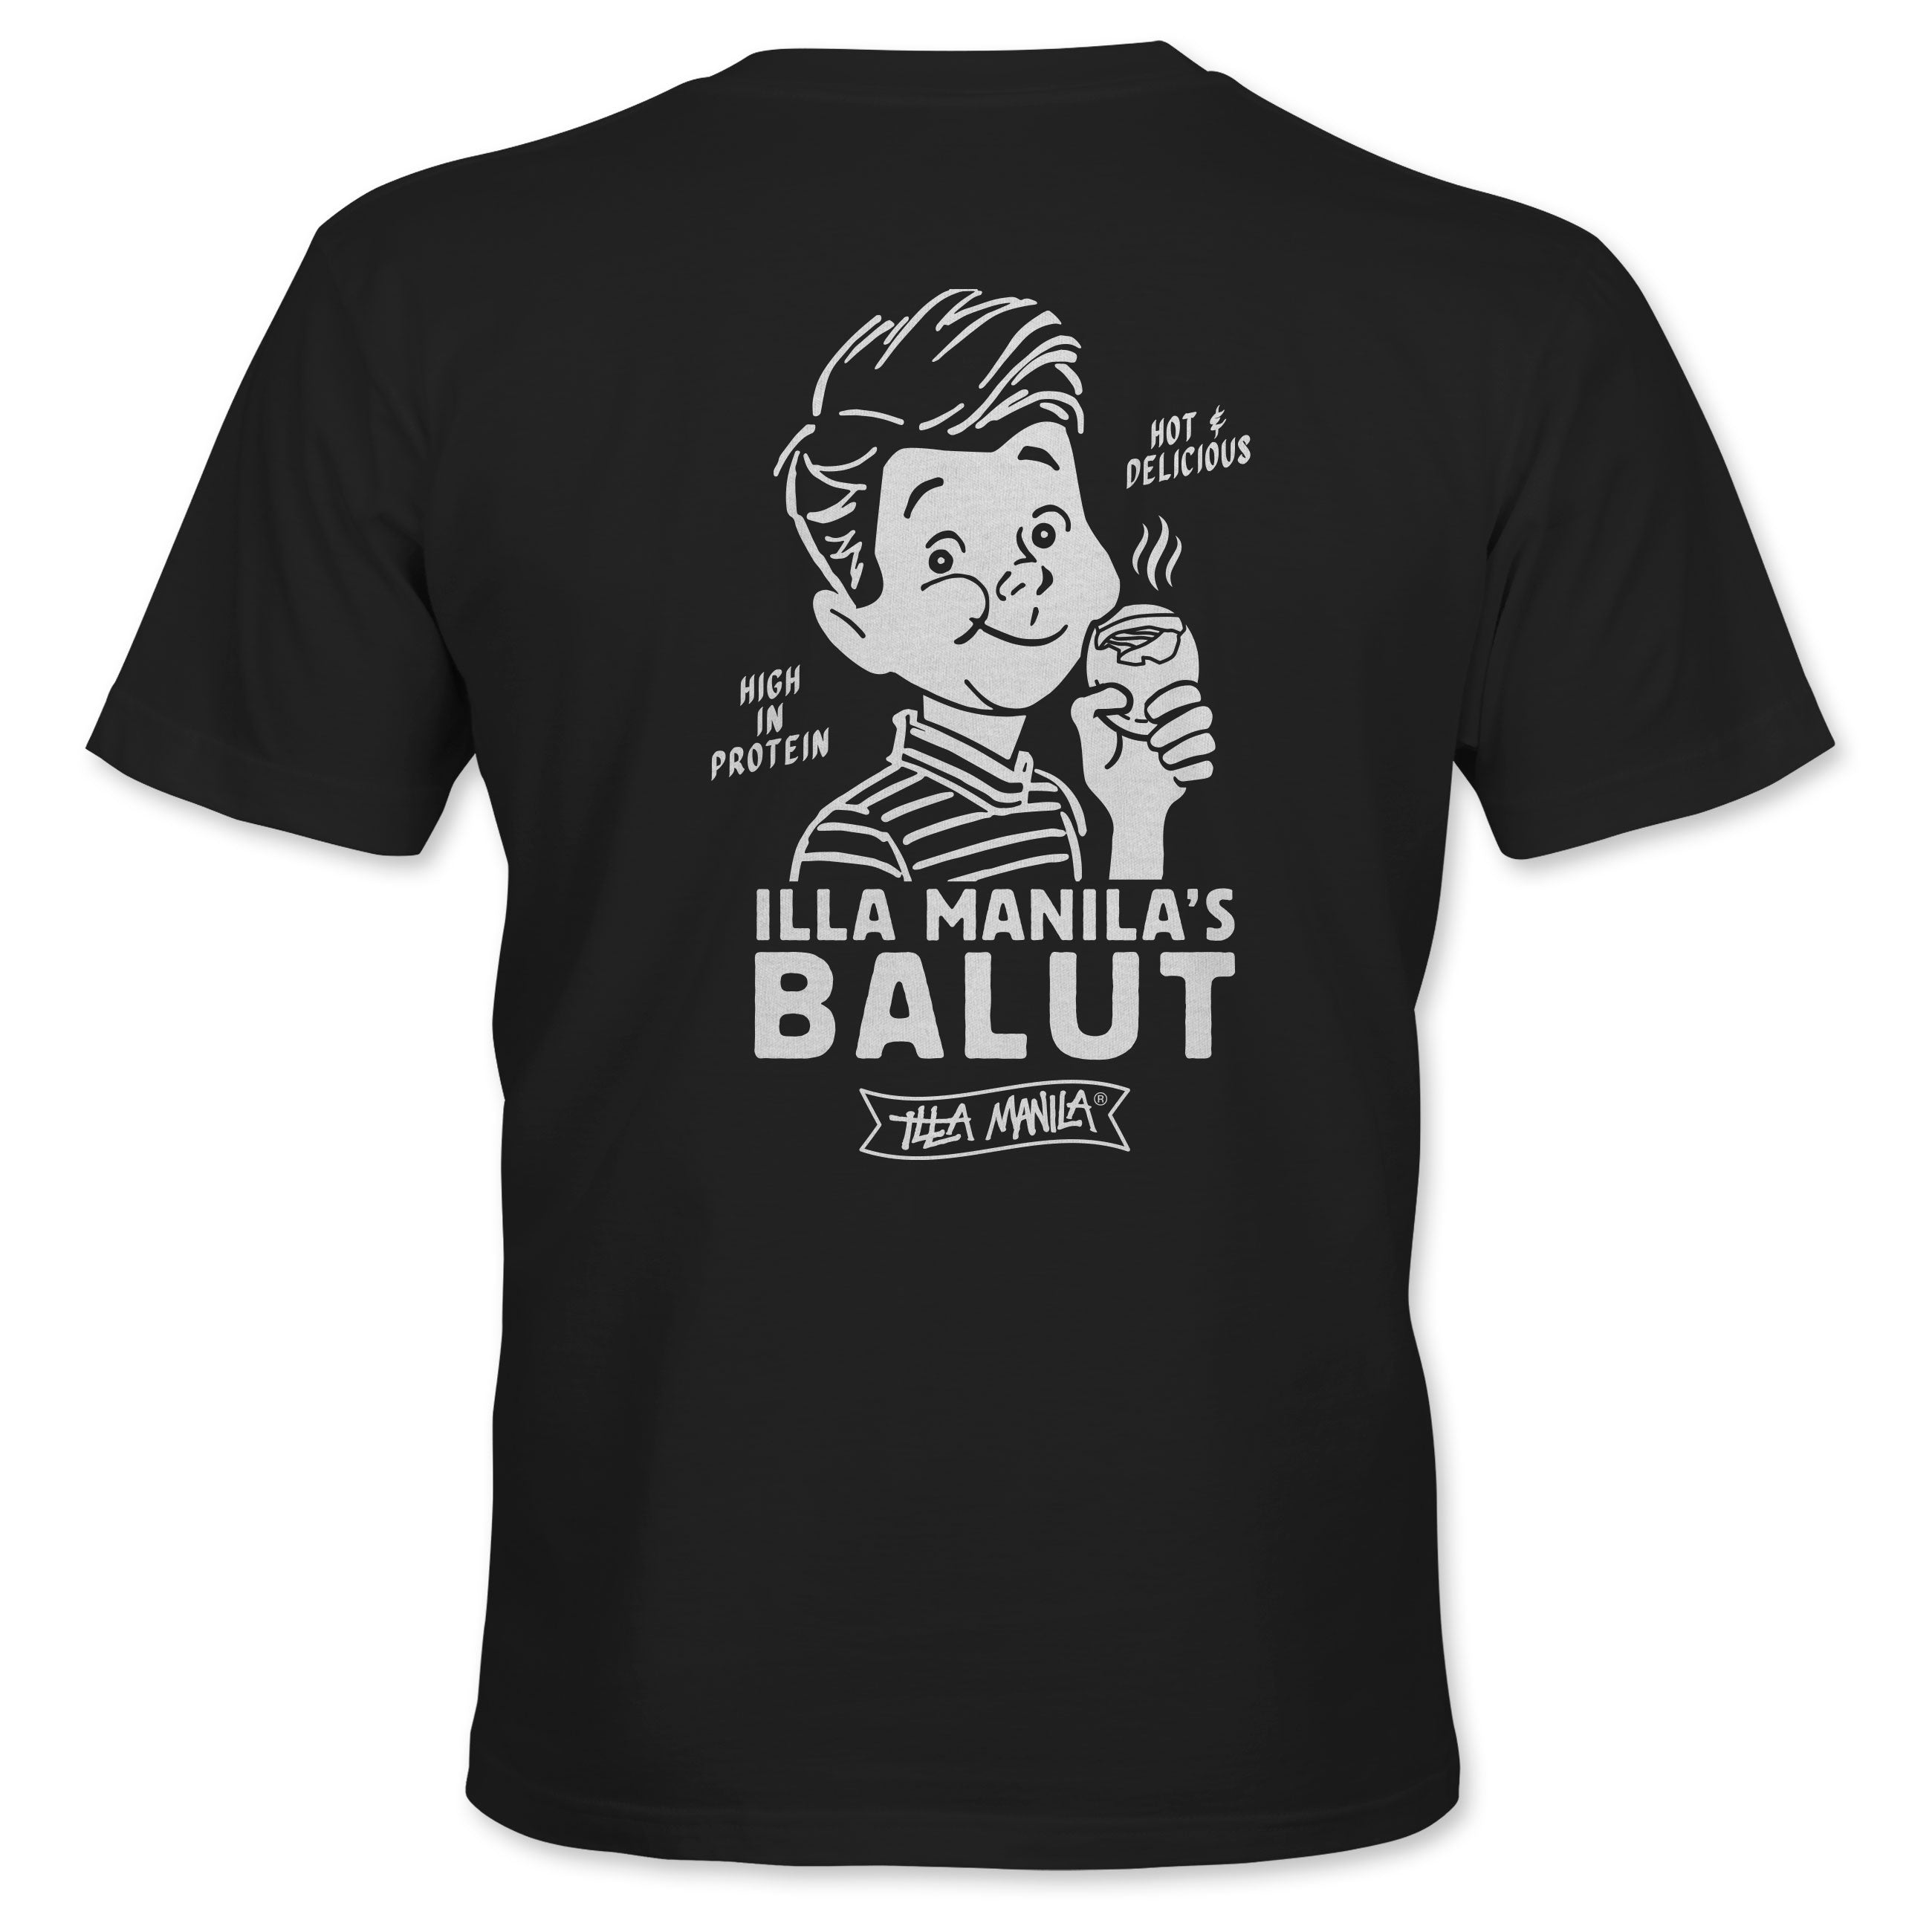 Balut v2 T-shirt - Black